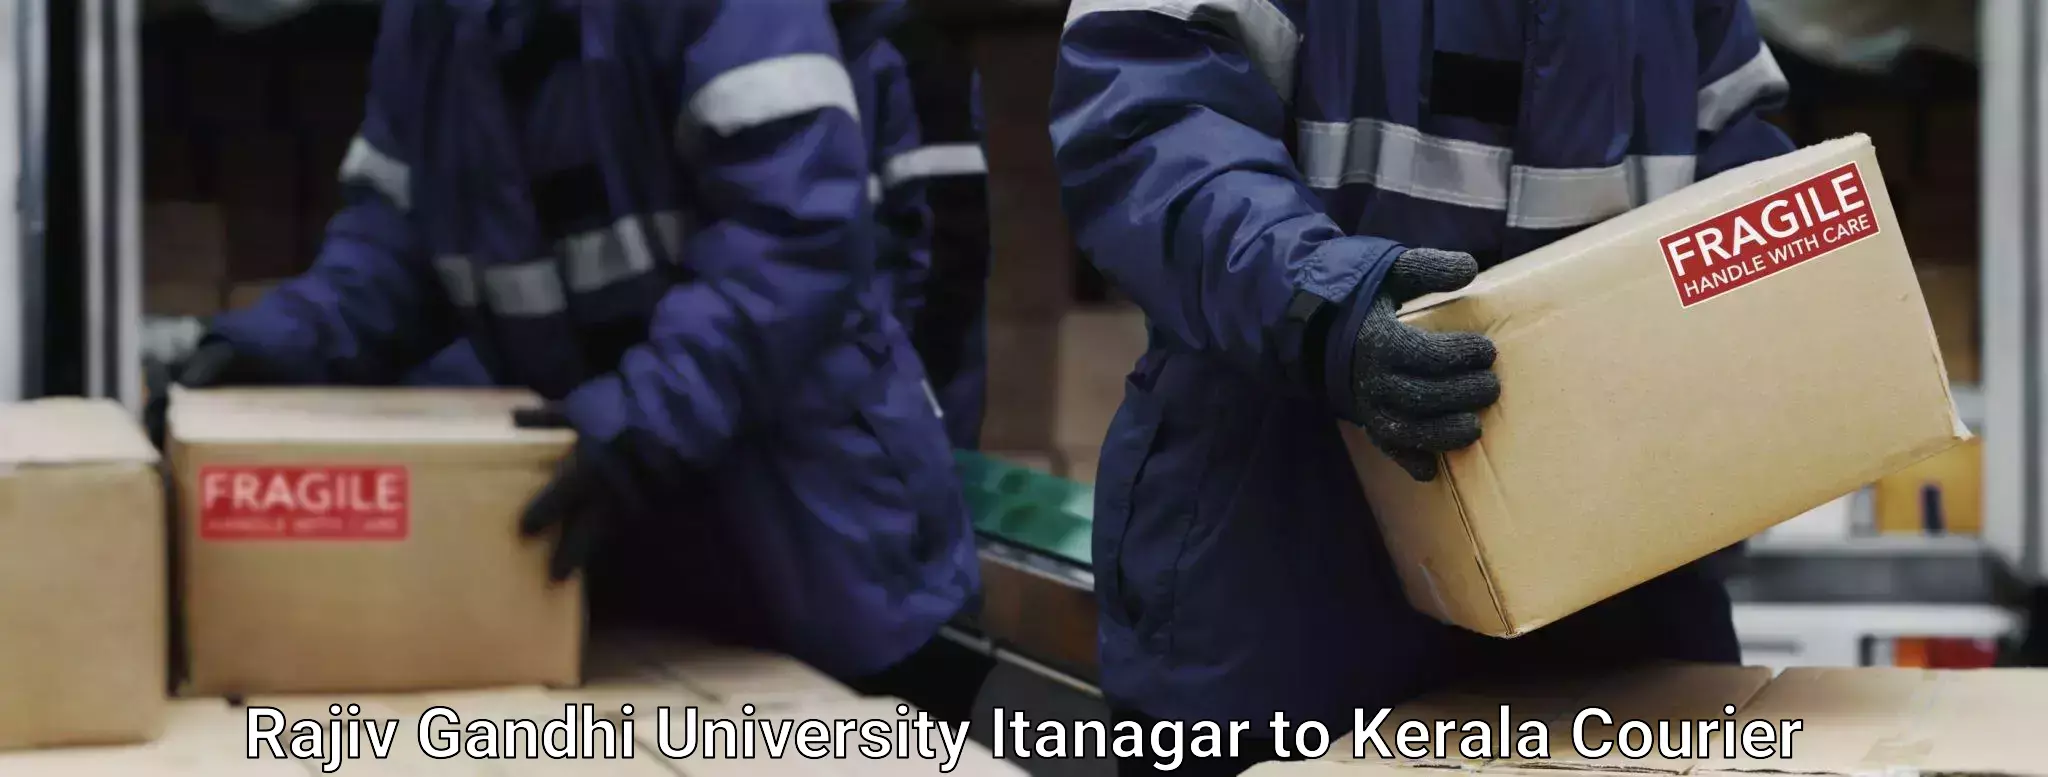 Baggage transport technology Rajiv Gandhi University Itanagar to Kilimanoor